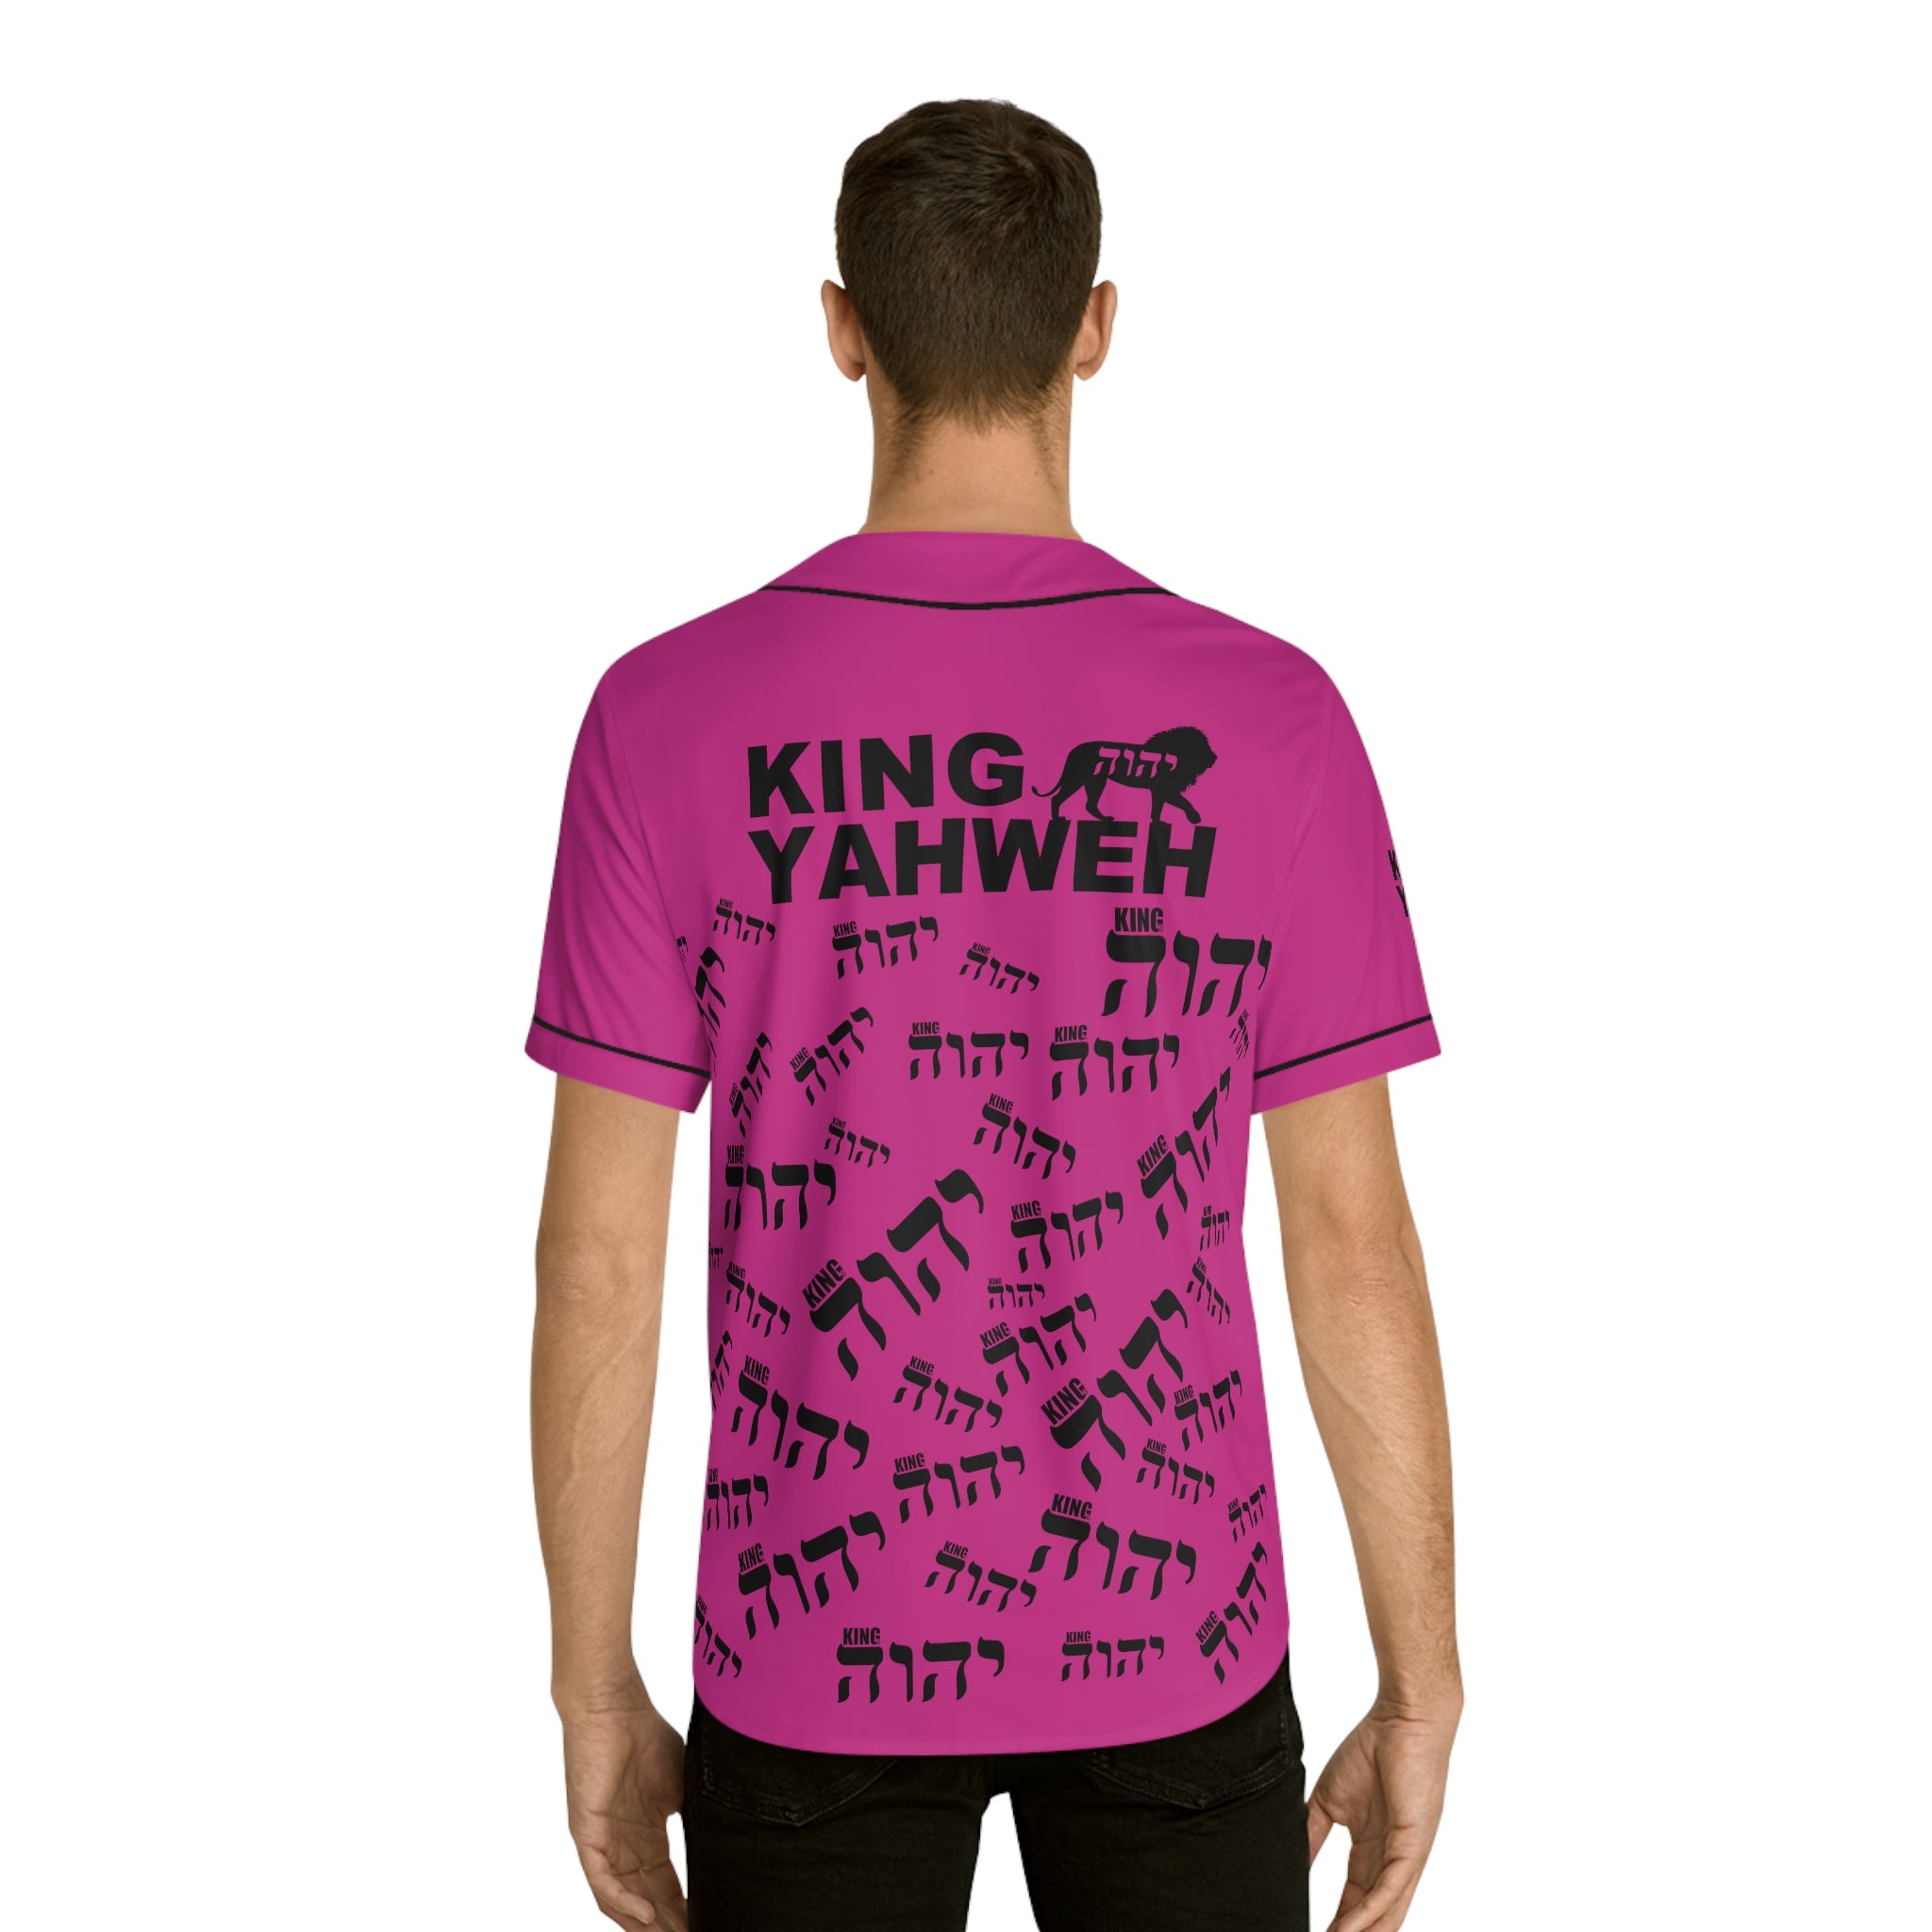 KING YAHWEH SUPERSTAR (Men's Sozes Baseball Jersey)